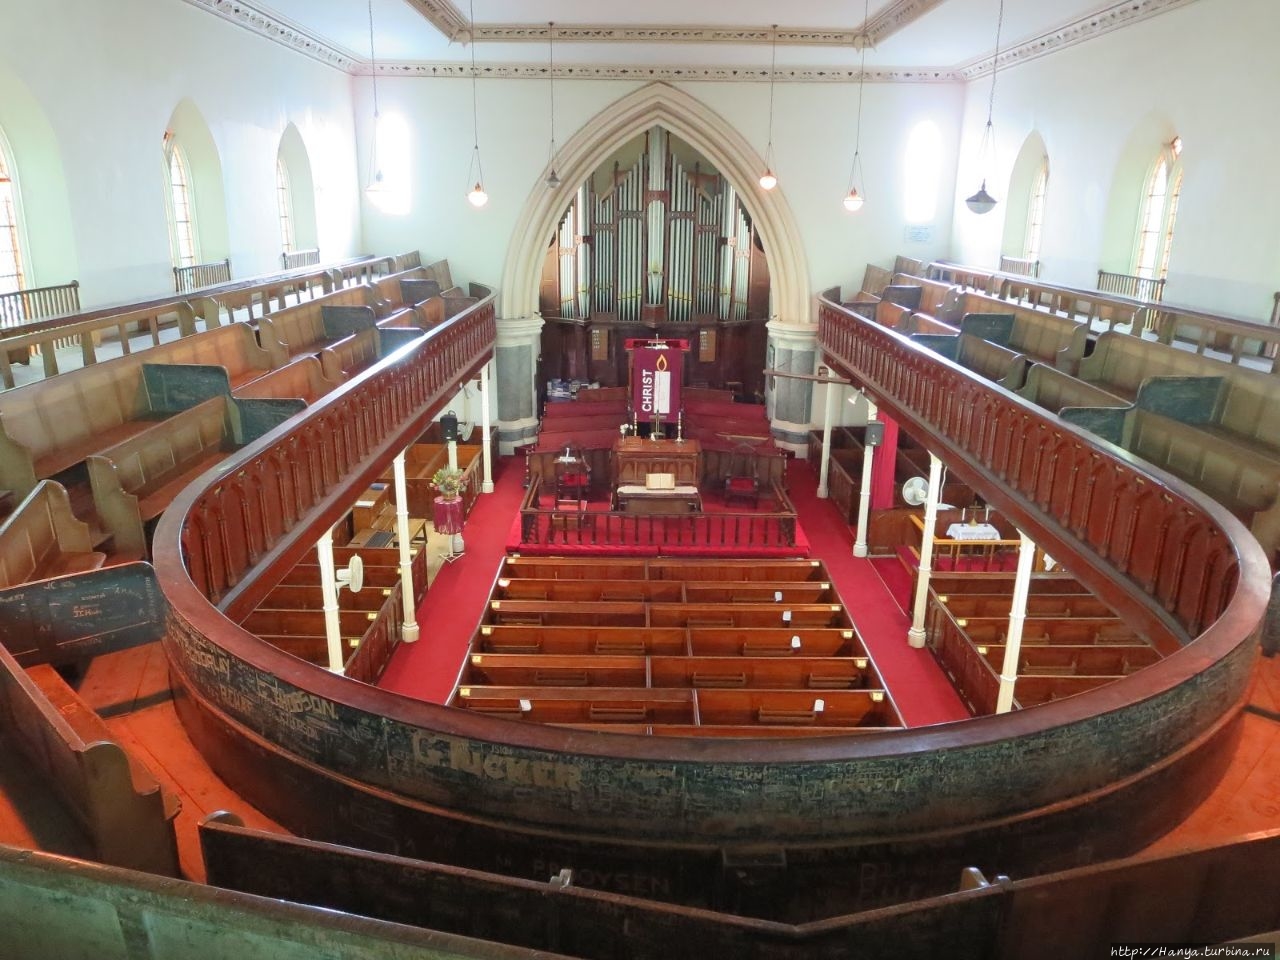 Интерьер церкви. Из интернета Грэхэмстаун, ЮАР